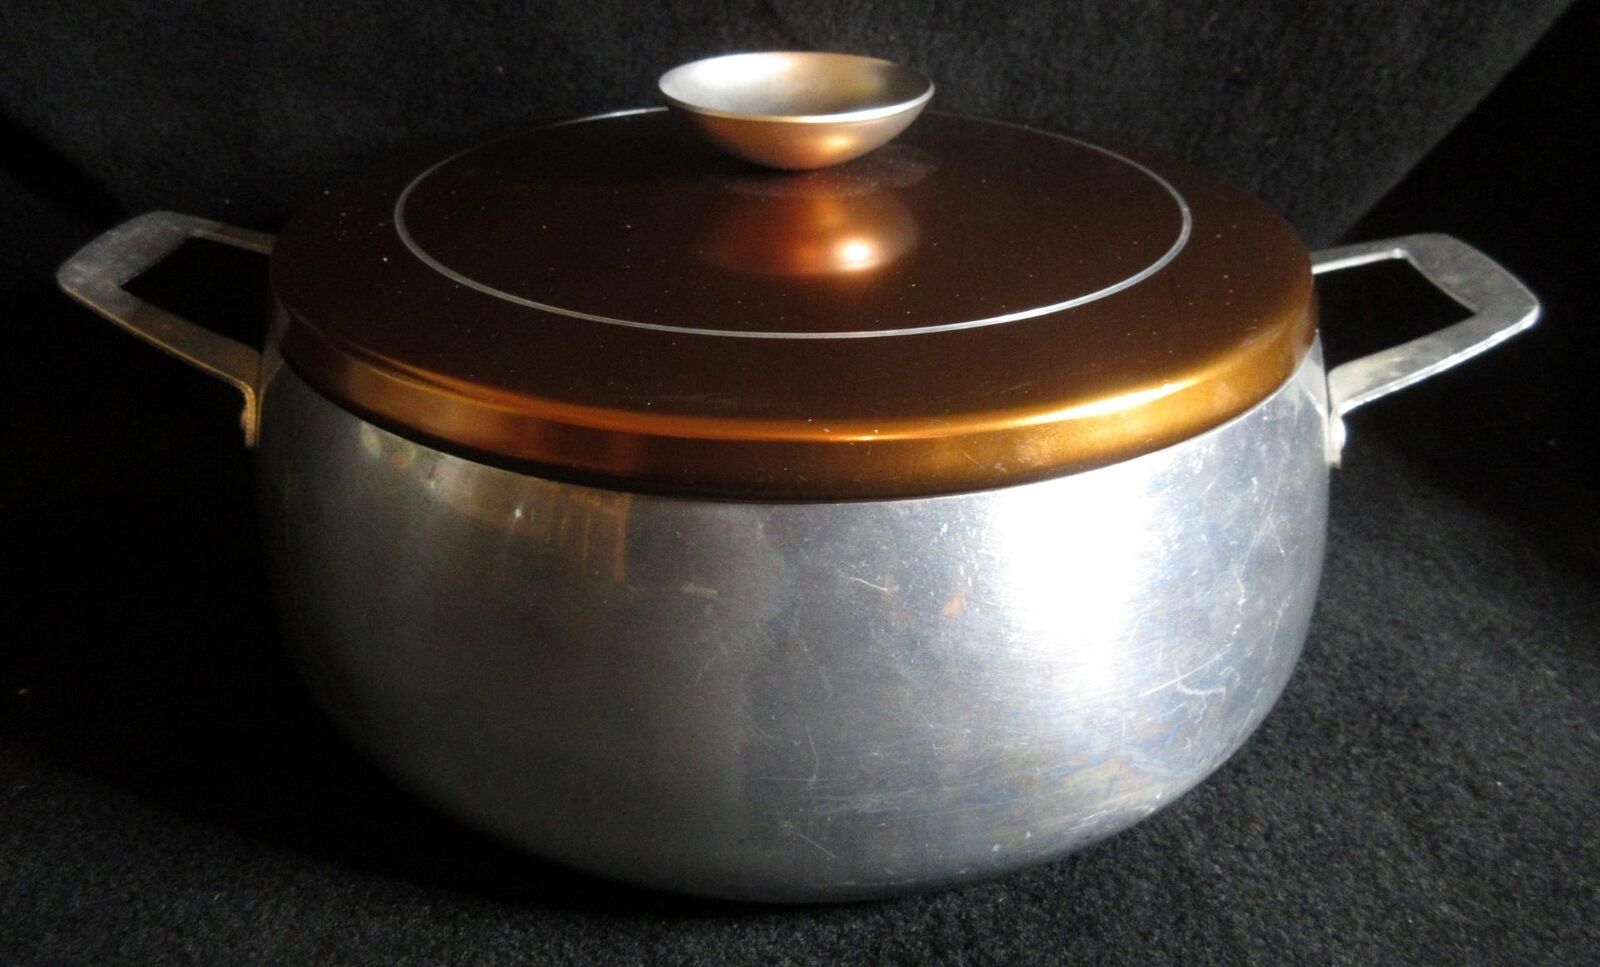 Vintage Regal Ware Aluminum Pan Dutch Oven Stock Pot Double Handle Gold Tone Lid